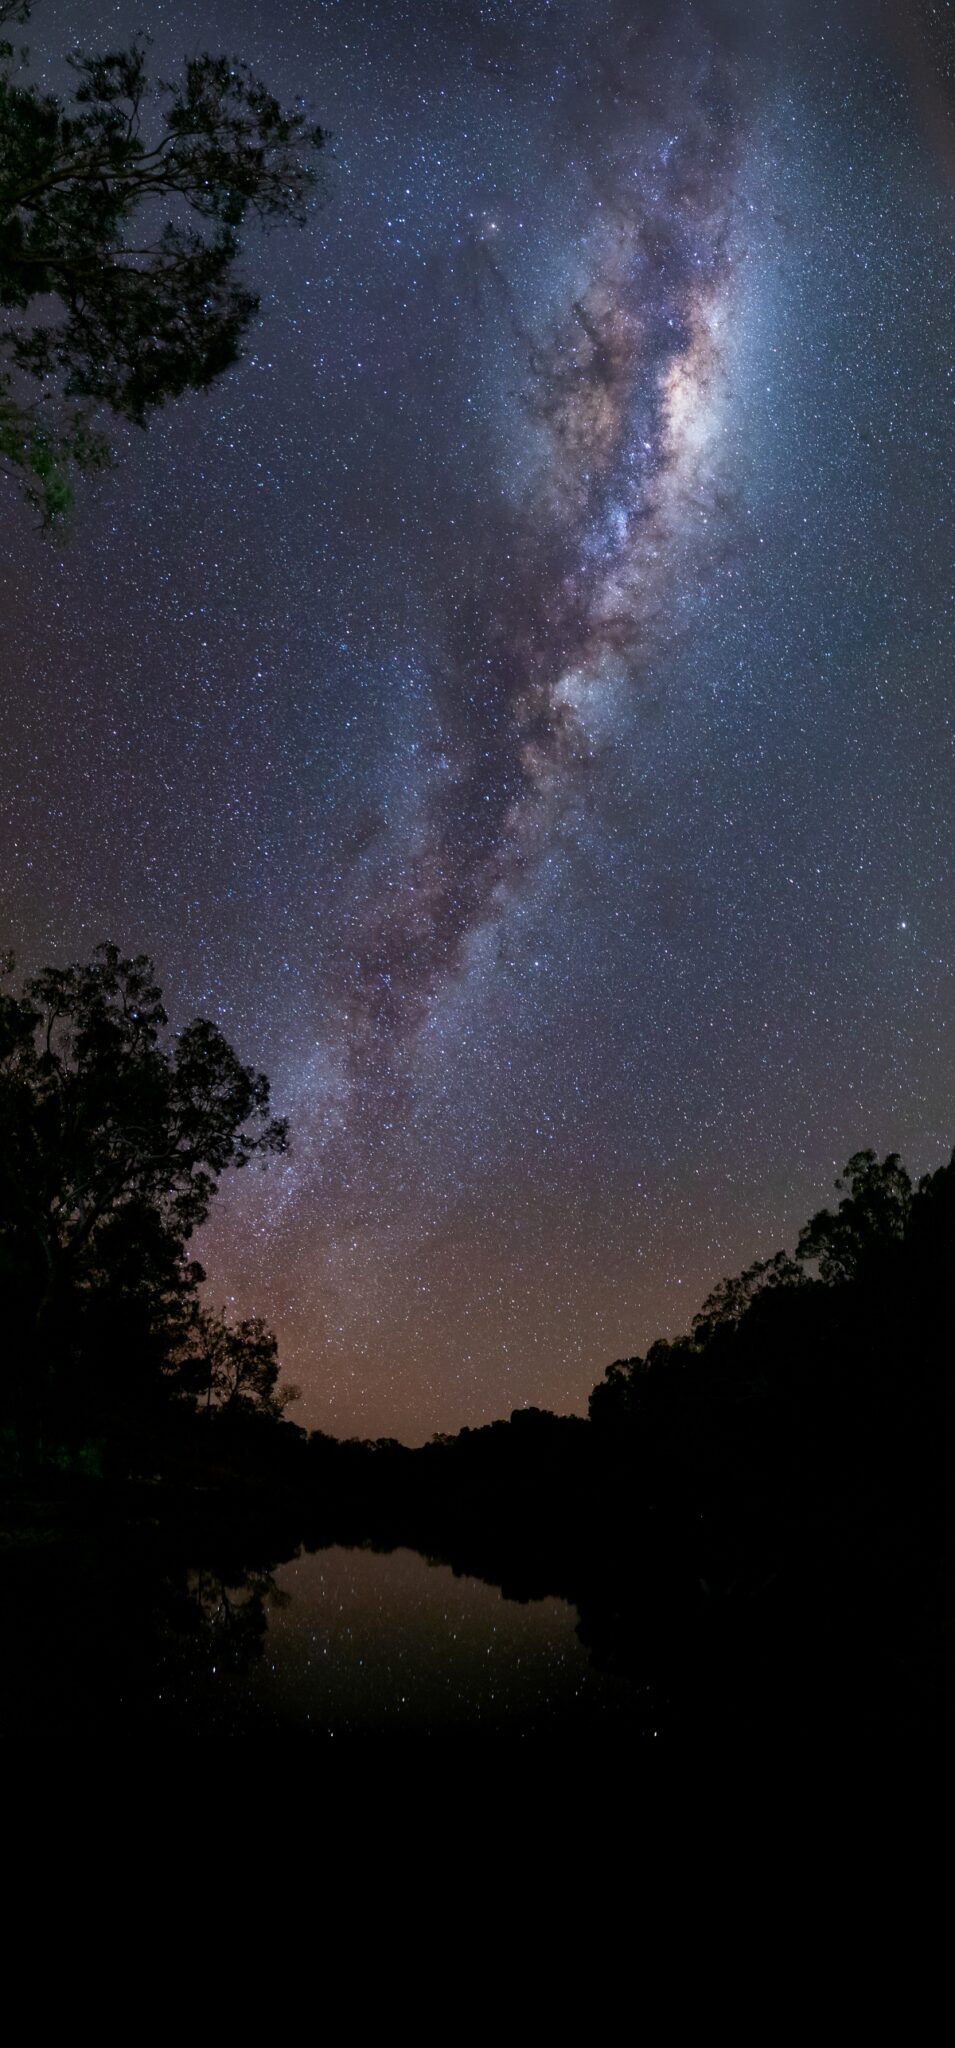 Milky Way by Robert Irwin